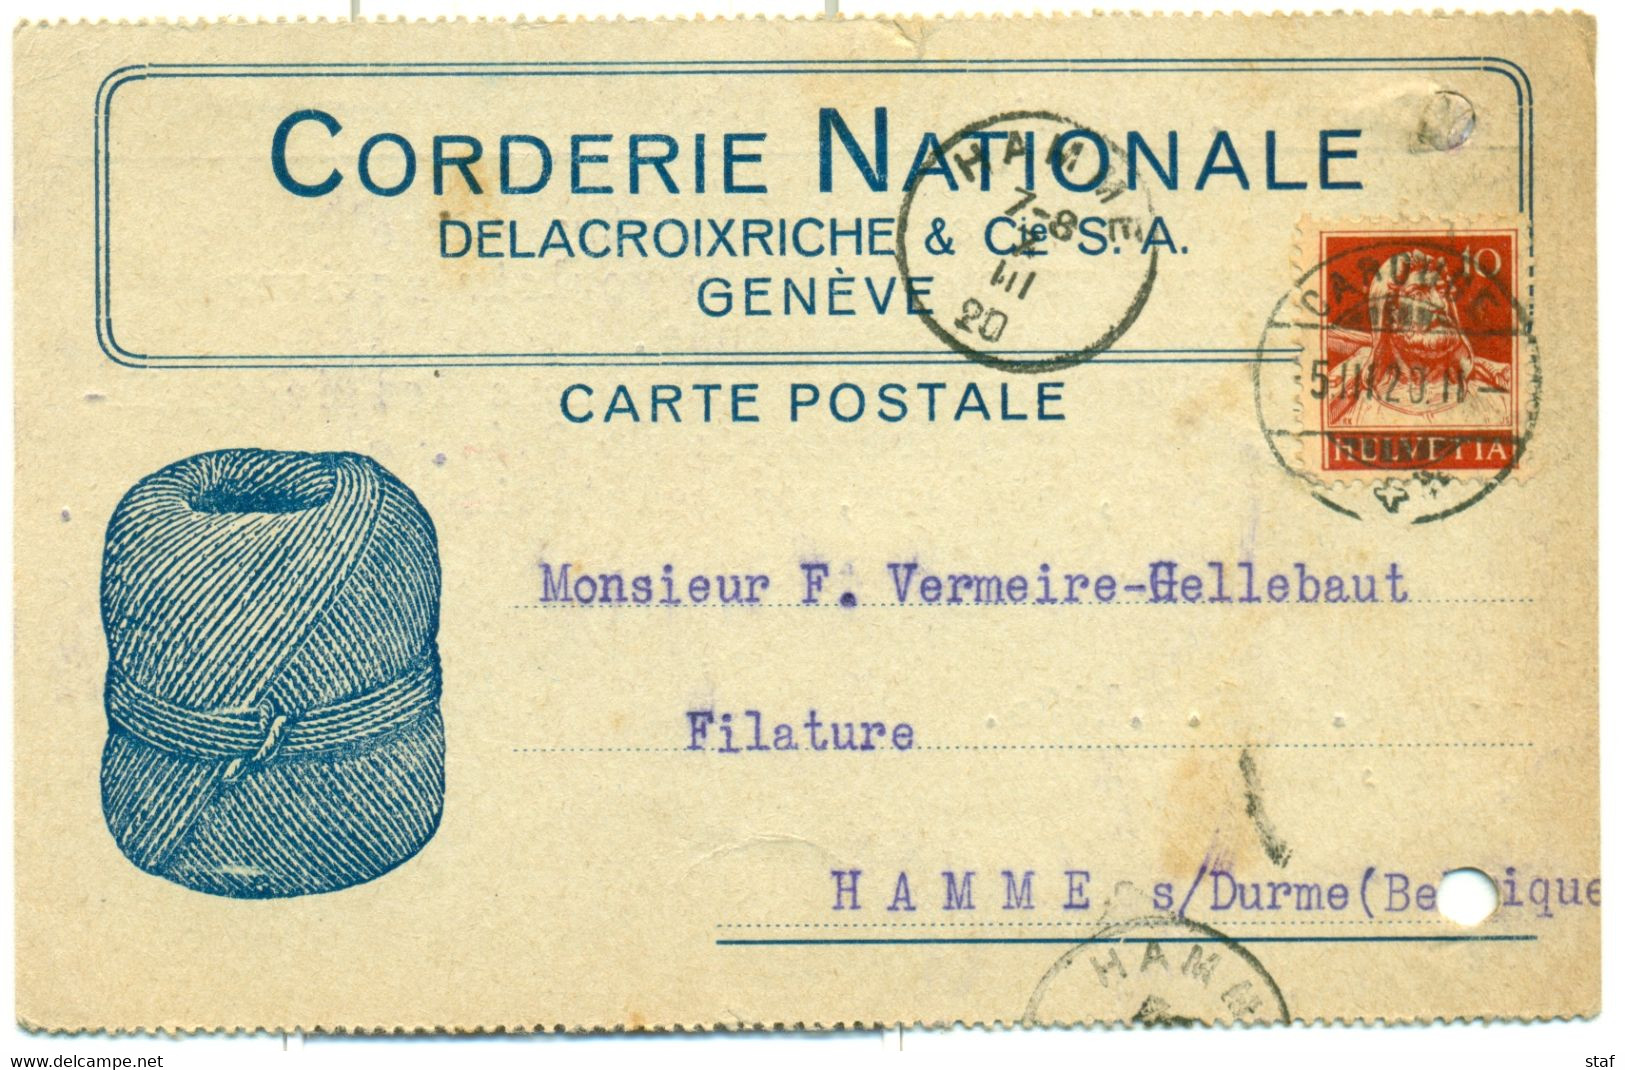 Carte Postale De La Corderie Nationale  Delacroixriche & Cie à Genève - Cachet De La Poste Caroube - 1920 !! - Switzerland